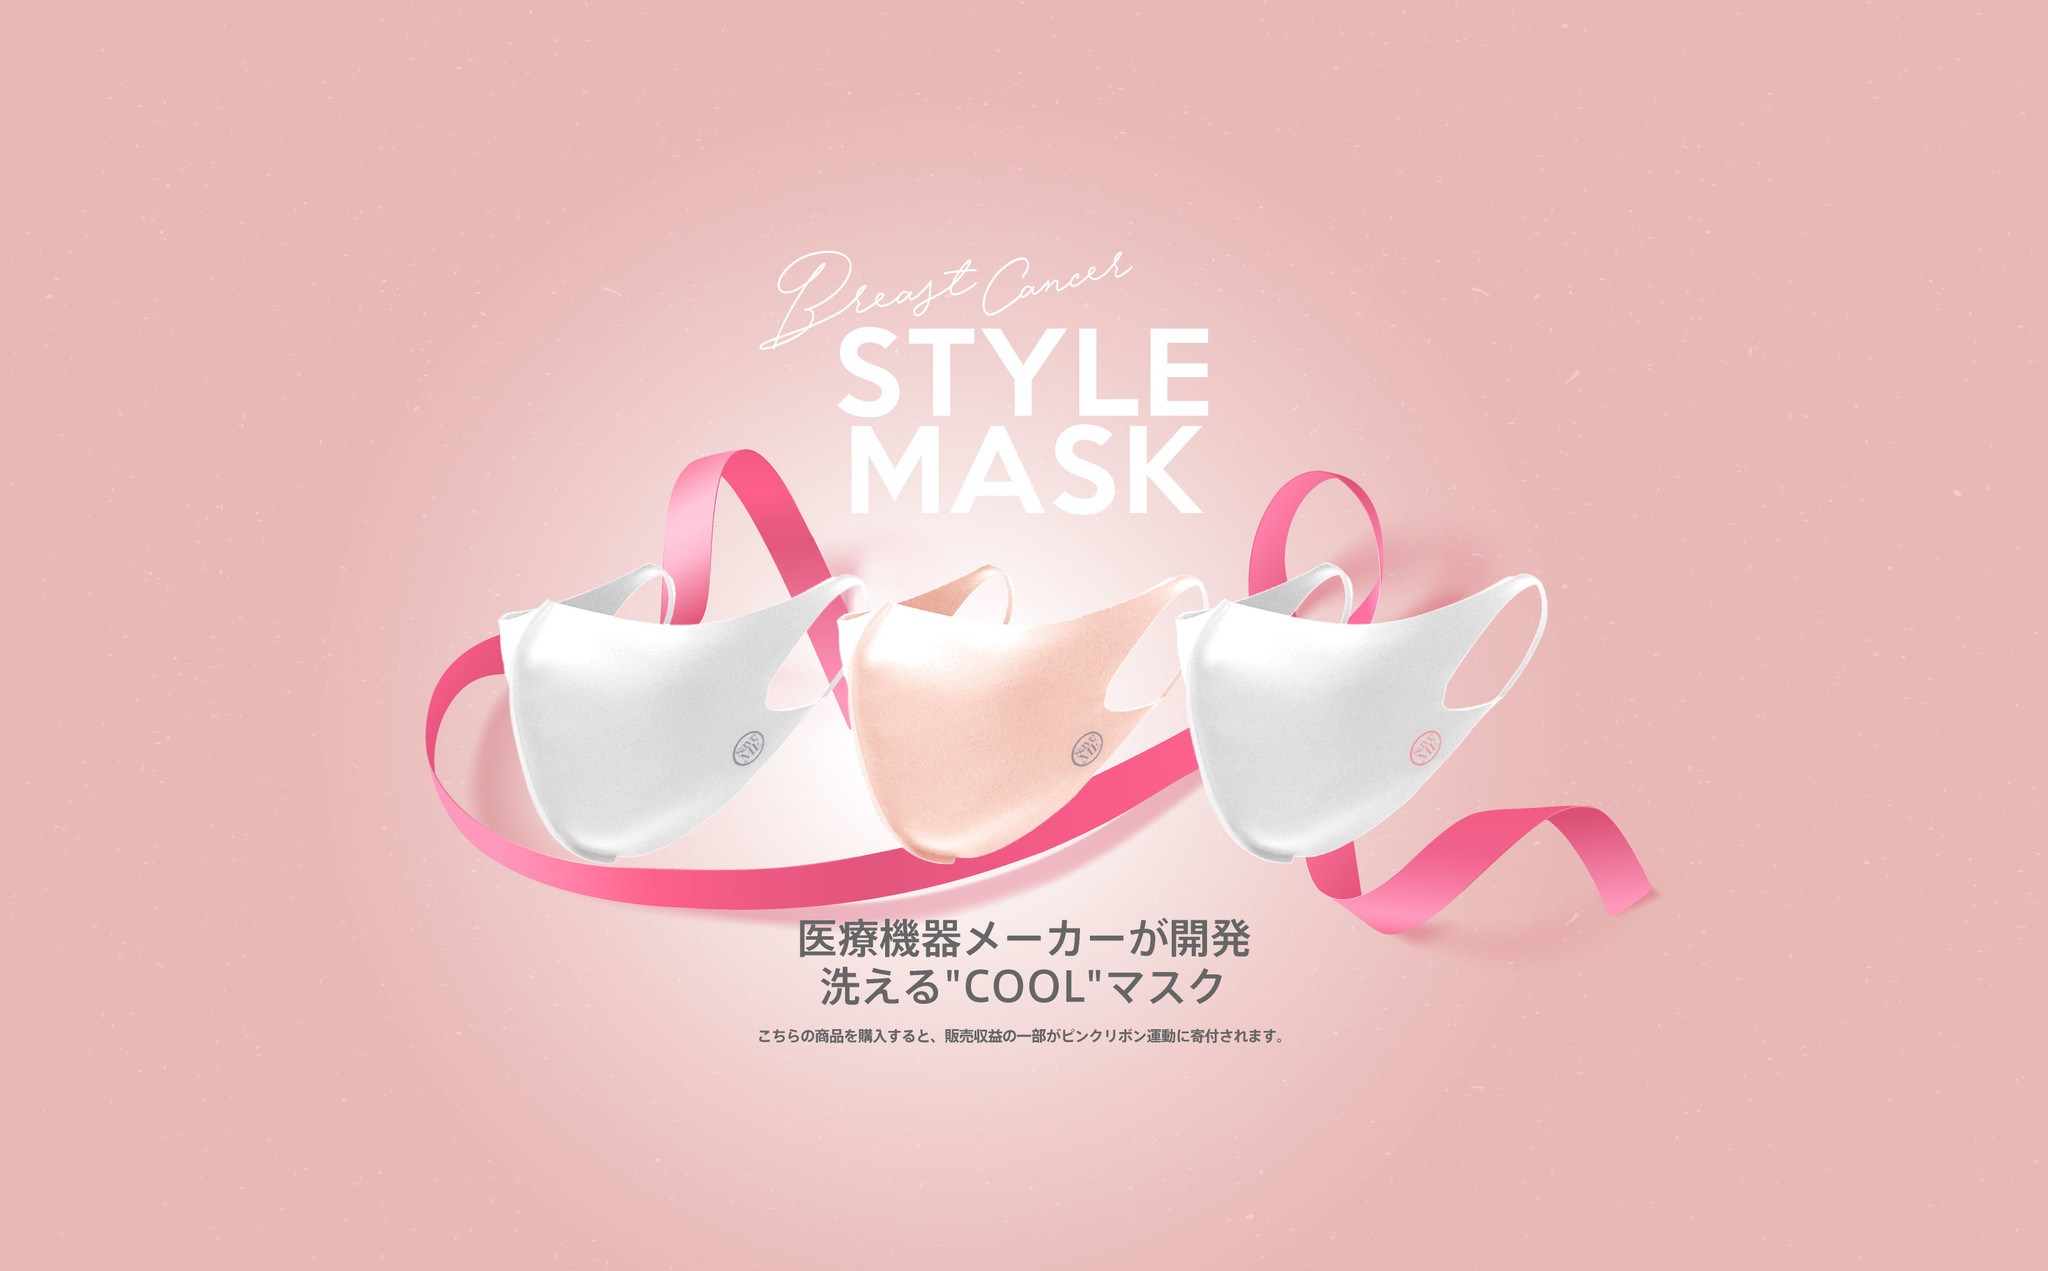 高機能立体マスクで ピンクリボン活動 を支援 医療機器メーカーが開発したエコマスクで 環境保護活動 も 株式会社 Nmt Japanのプレスリリース